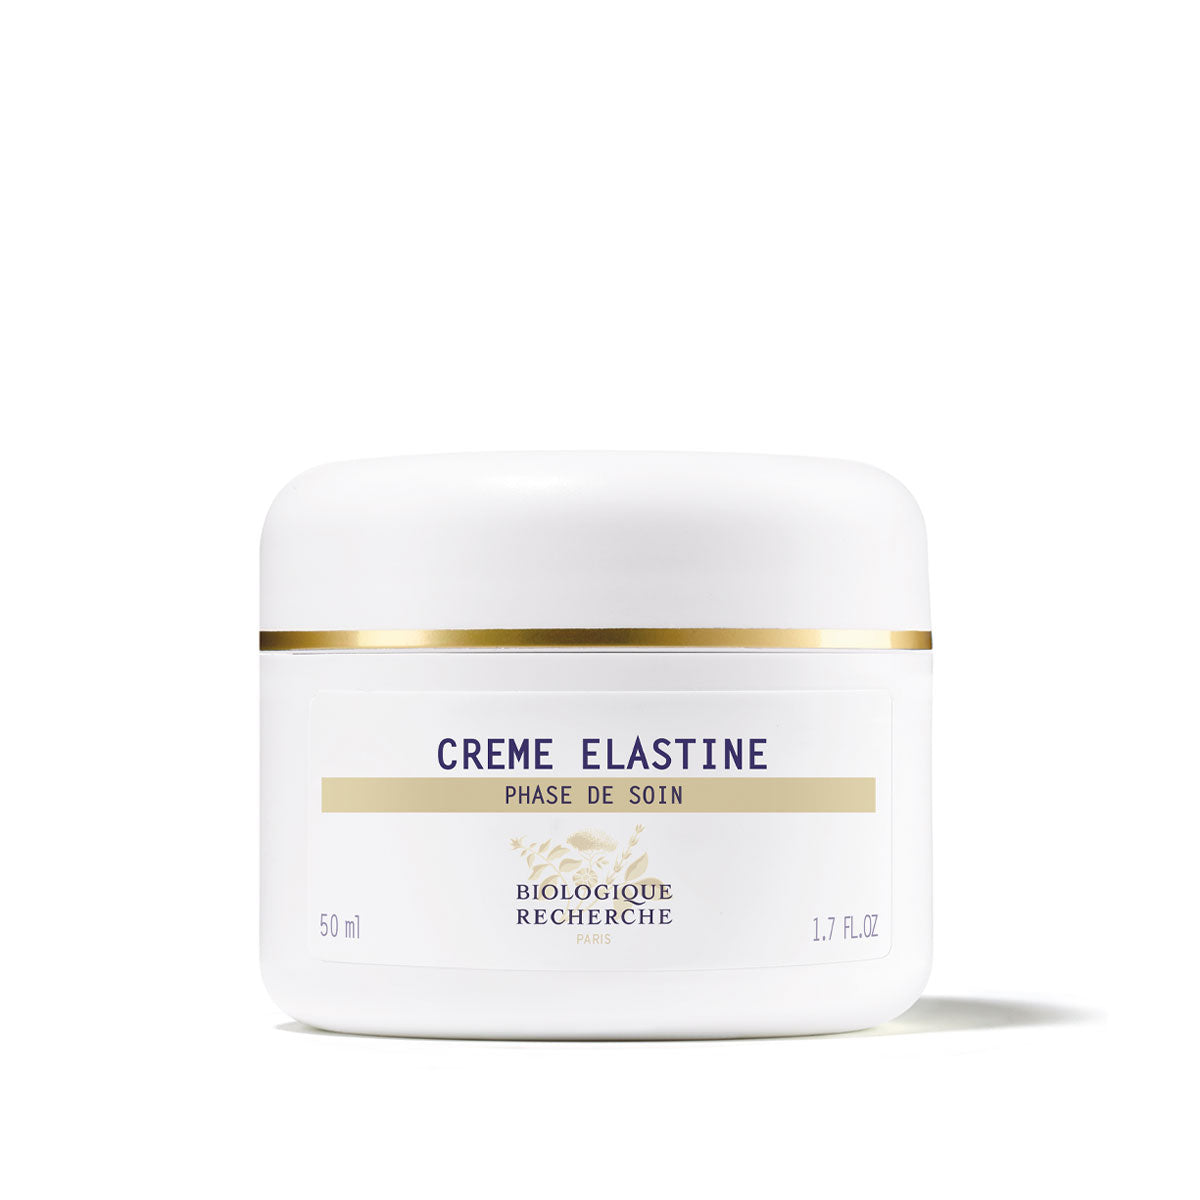 Creme Elastine -- Line Correcting Face Cream ** 1.7fl oz